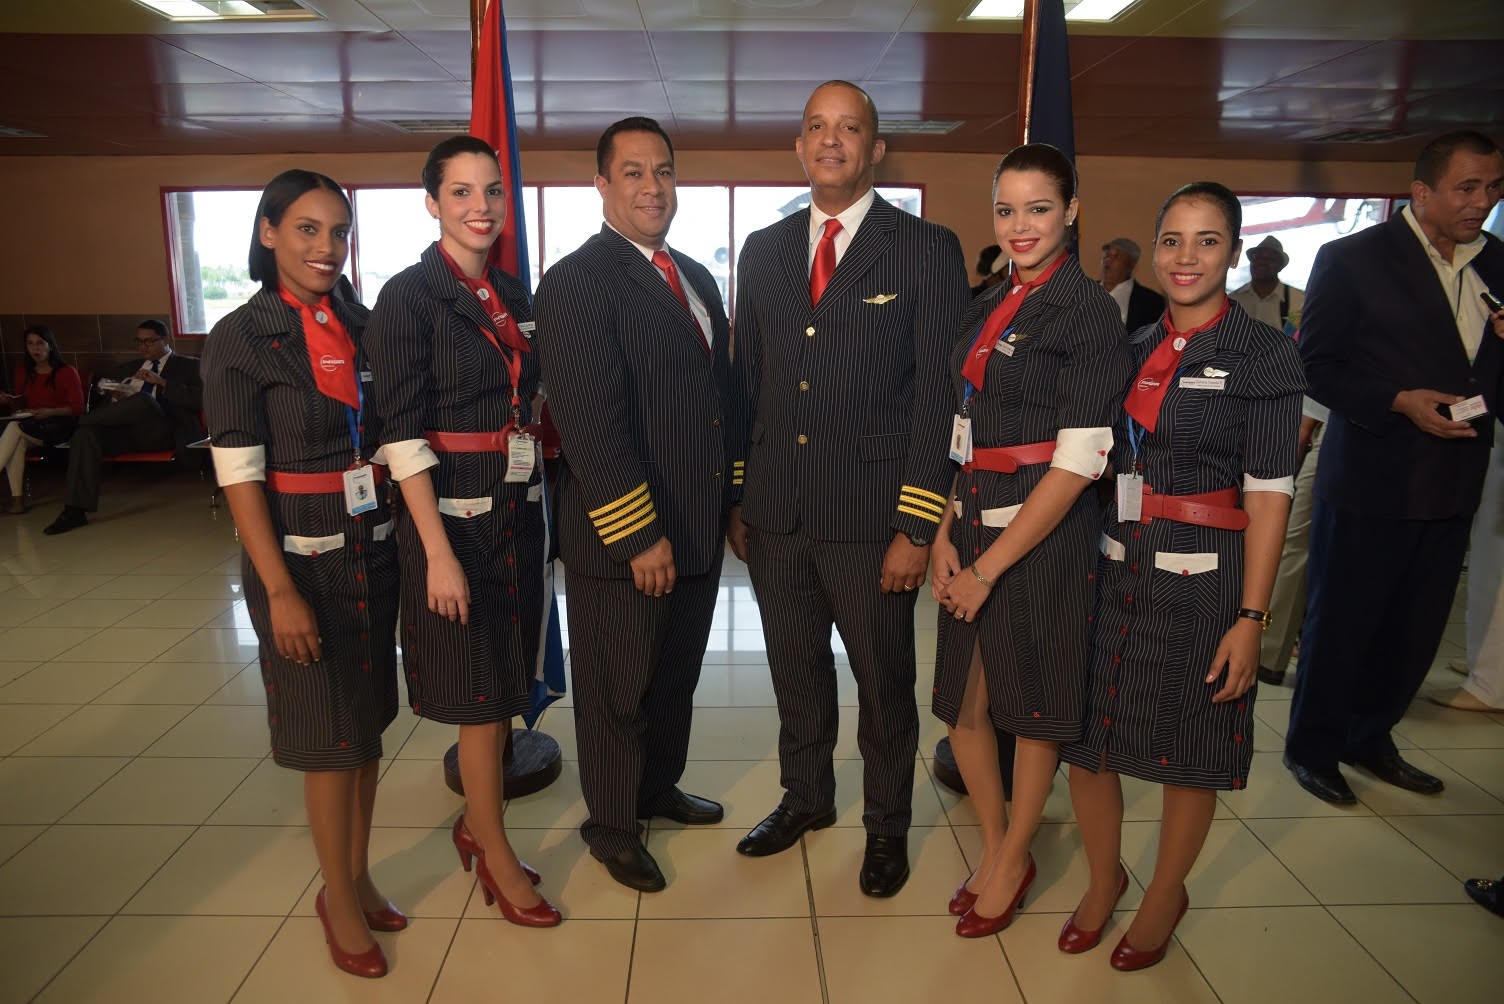 Pawa realiza vuelo inaugural Santo Domingo - La Habana